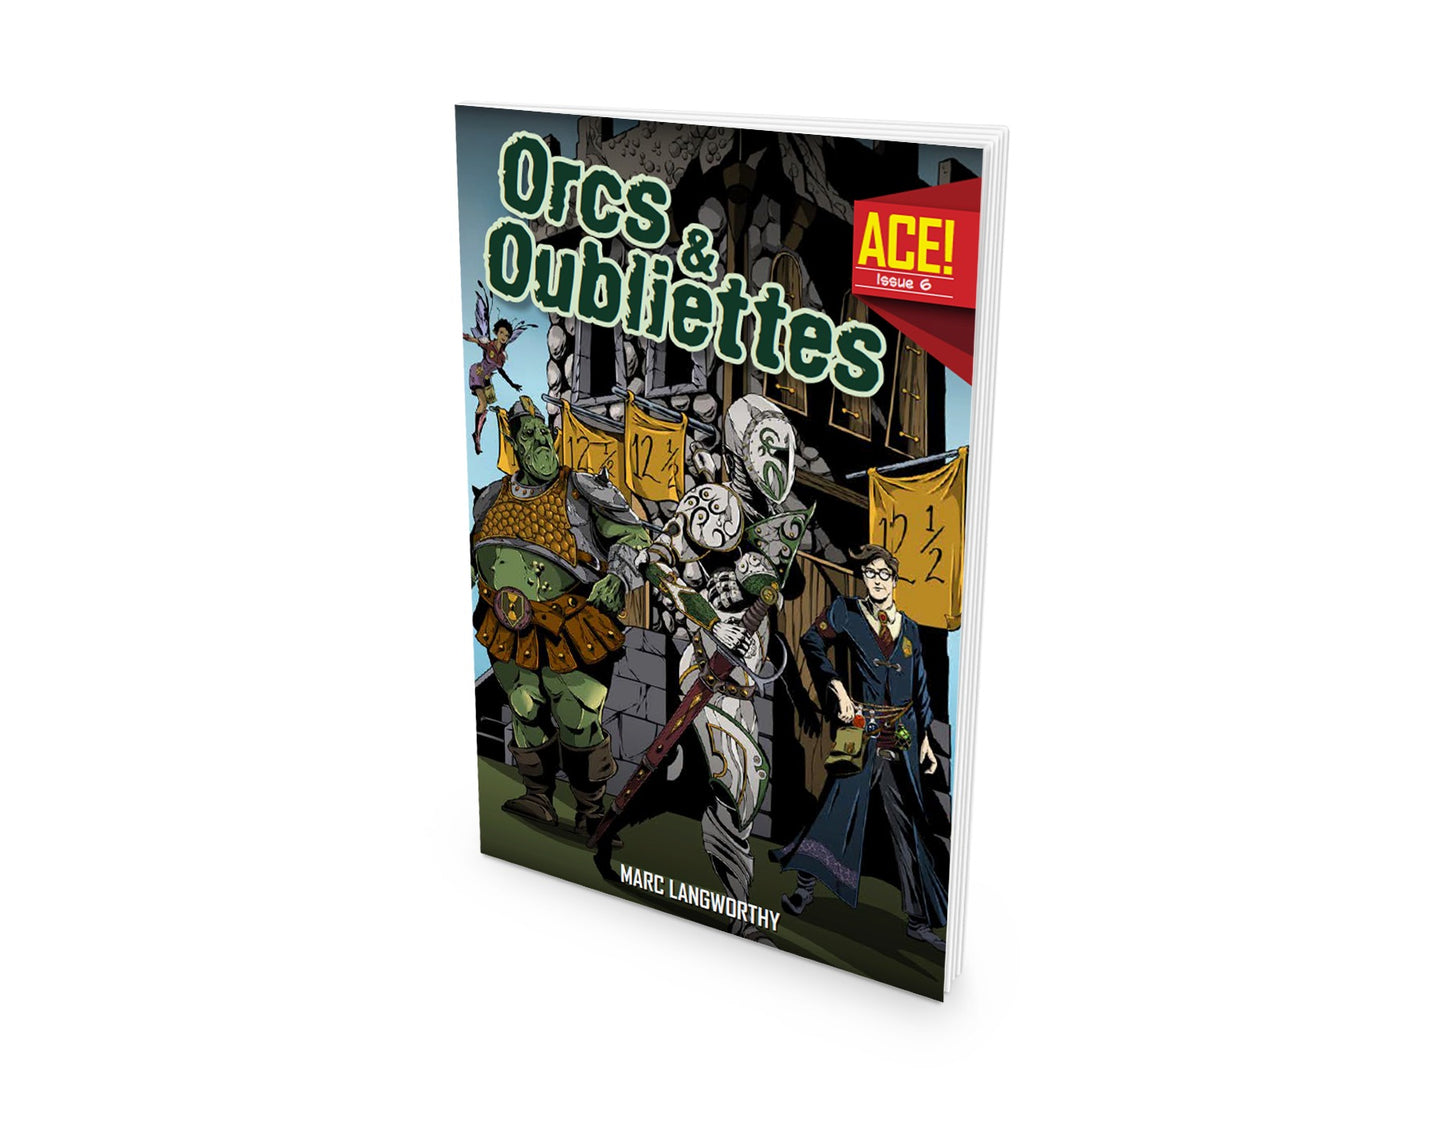 A.C.E. #6: Orcs & Oubliettes (ACE)